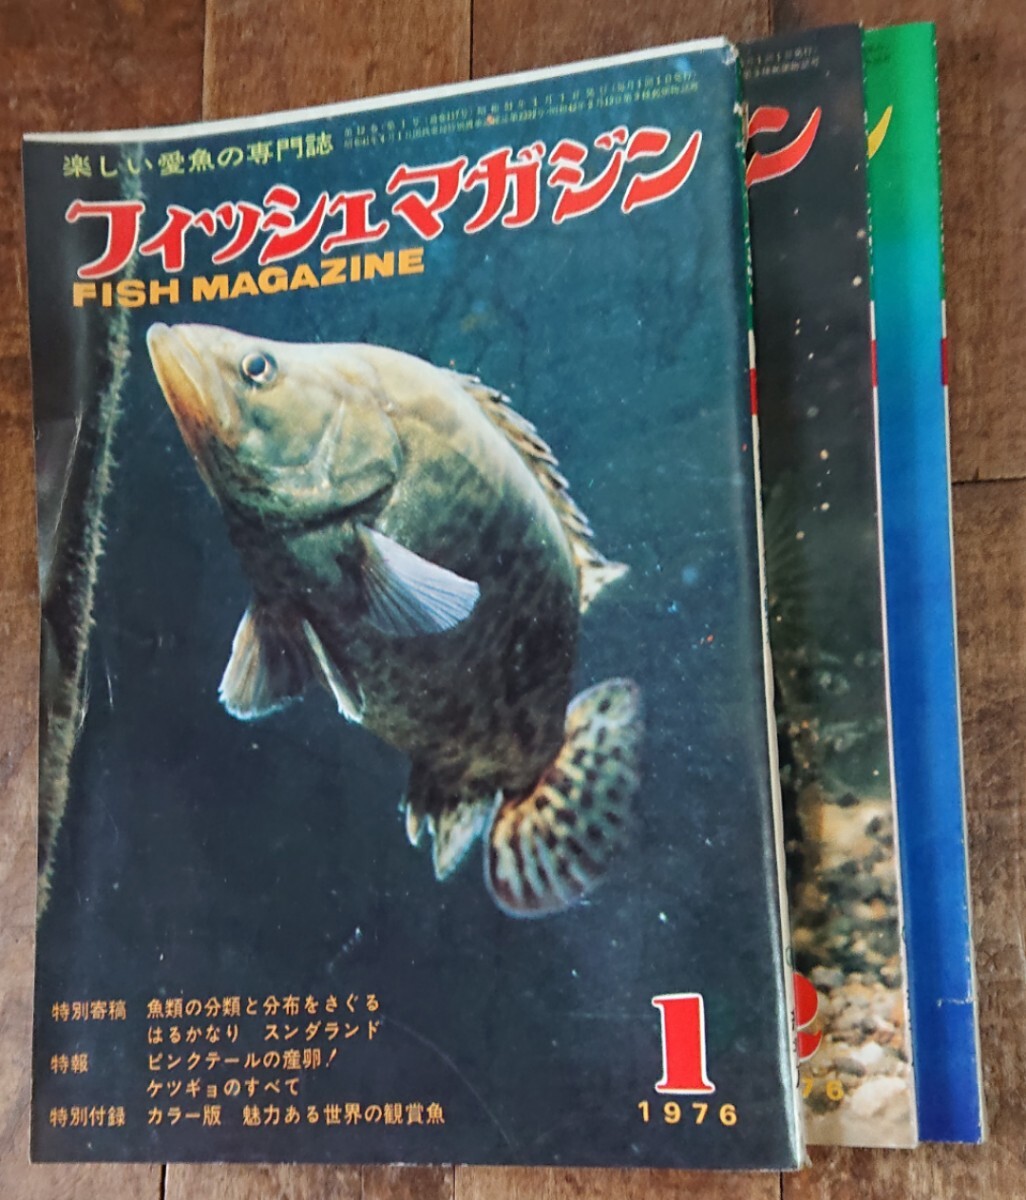  ежемесячный [ рыба журнал ]1~3 месяц номер 1976 год ( Showa 51 год ) версия. редкостный цена. есть старый журнал три шт. 